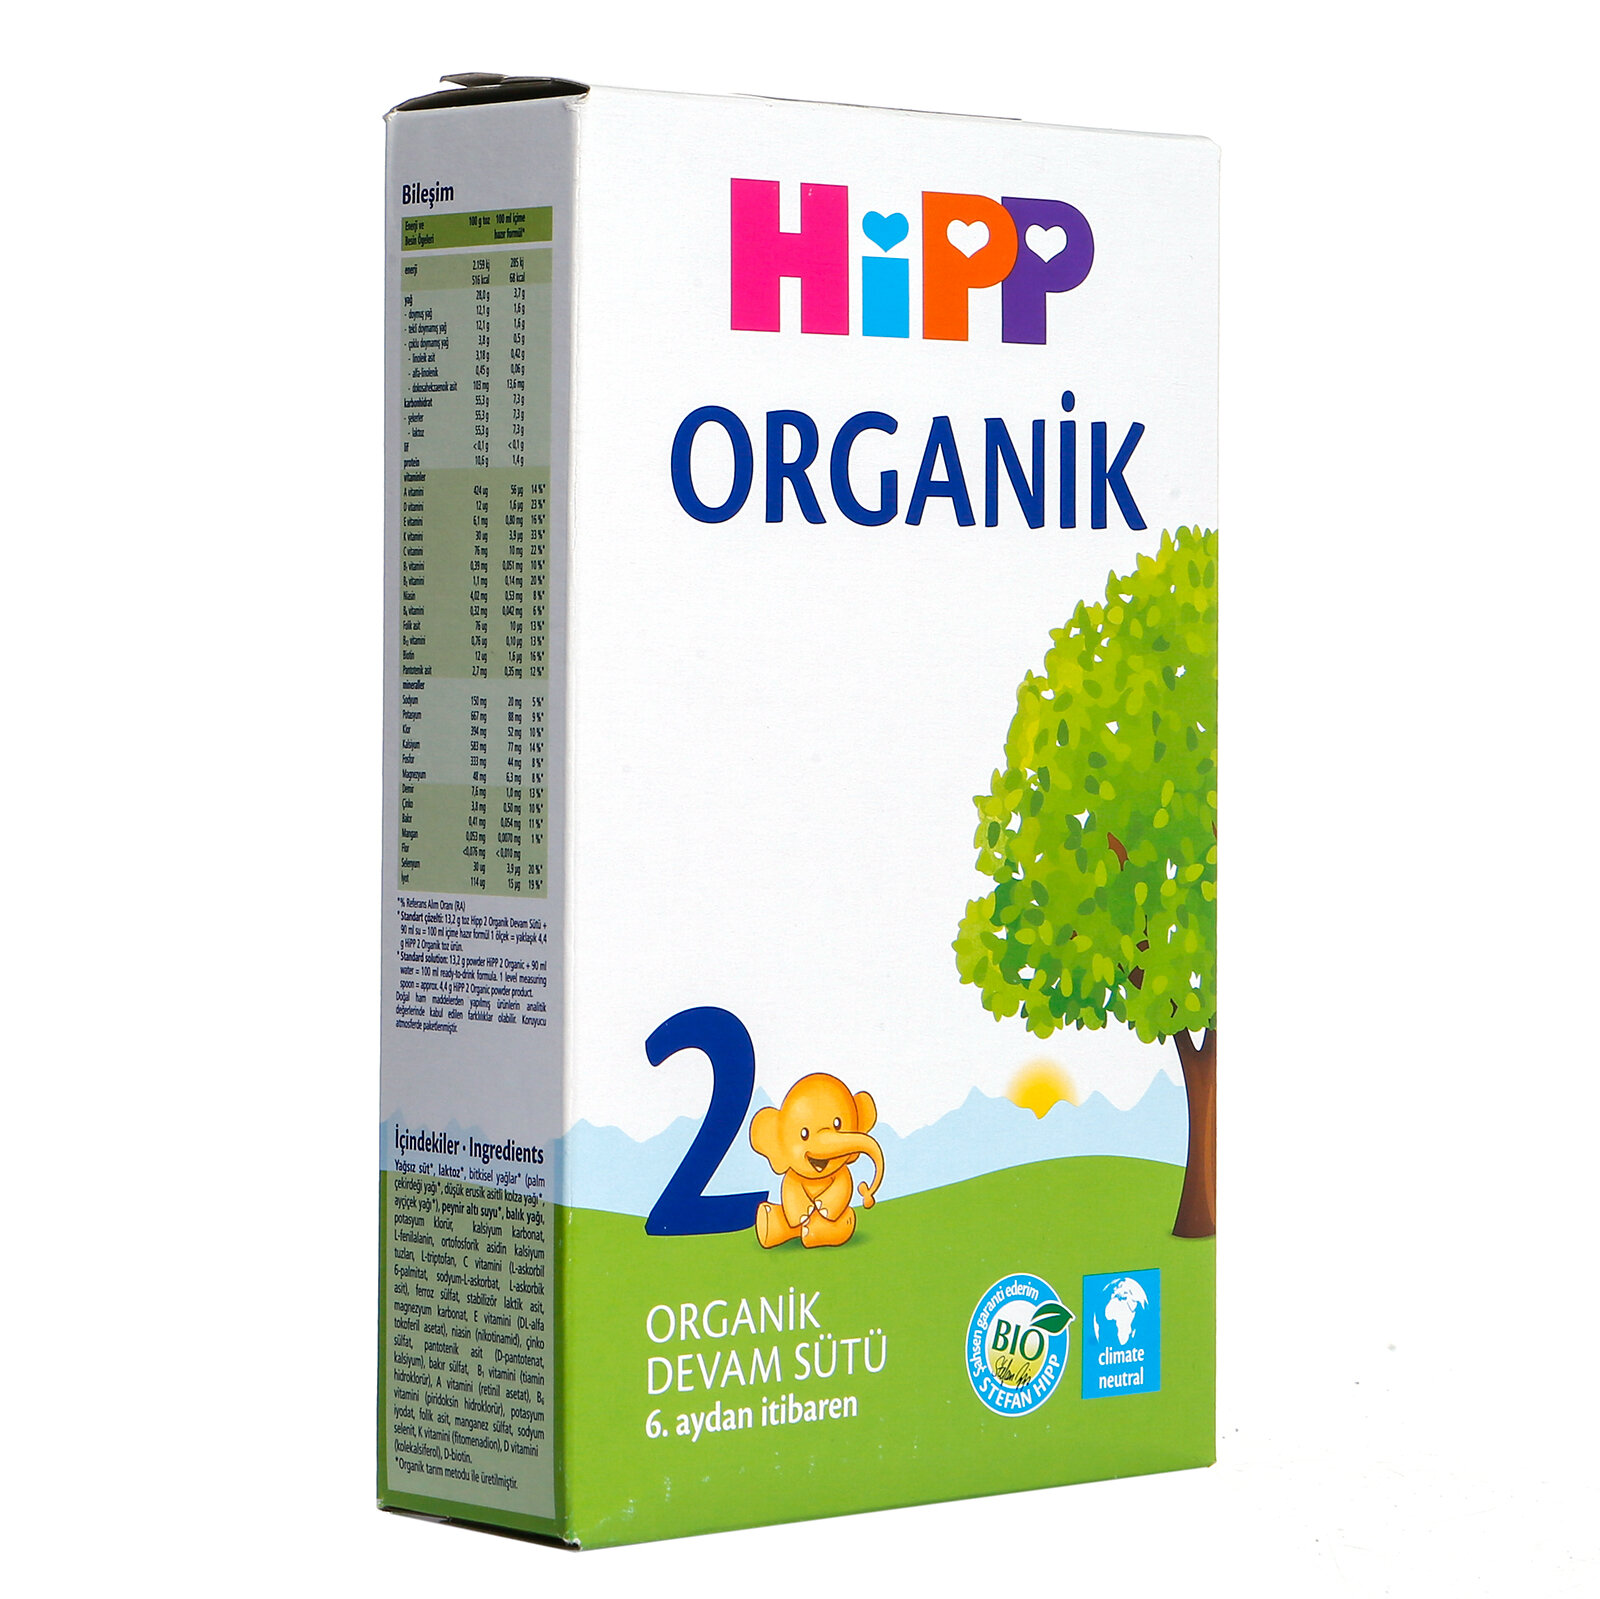 HiPP 2 Organik Combiotic Devam Sütü 350 gr 6-12 Ay - ebebek